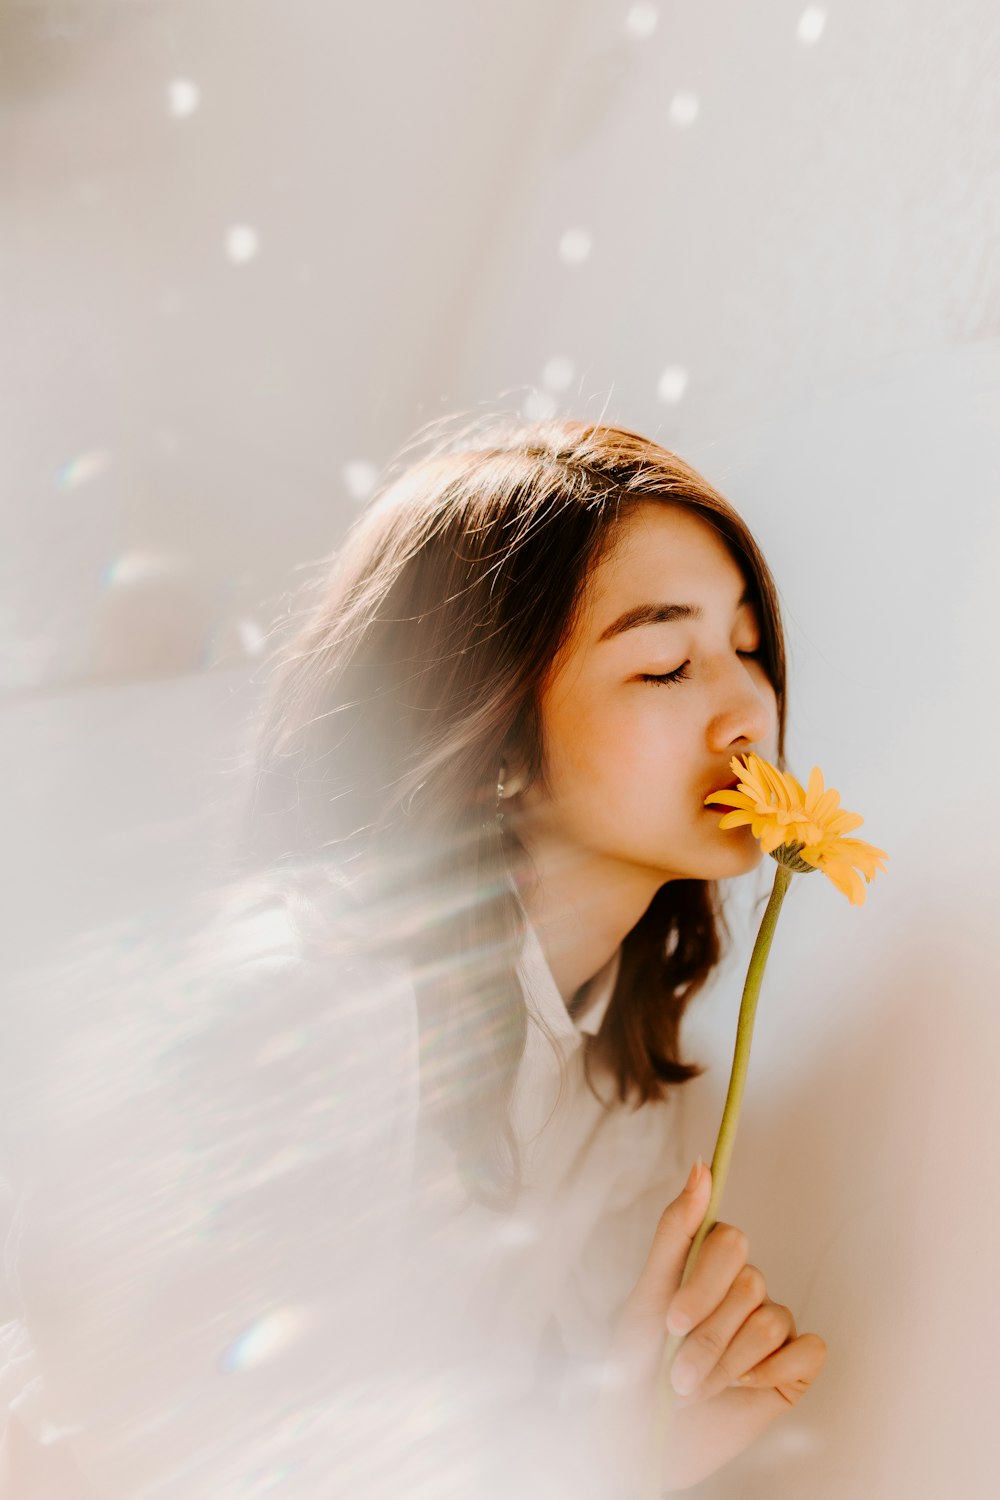 Frau riecht an gelber Blume